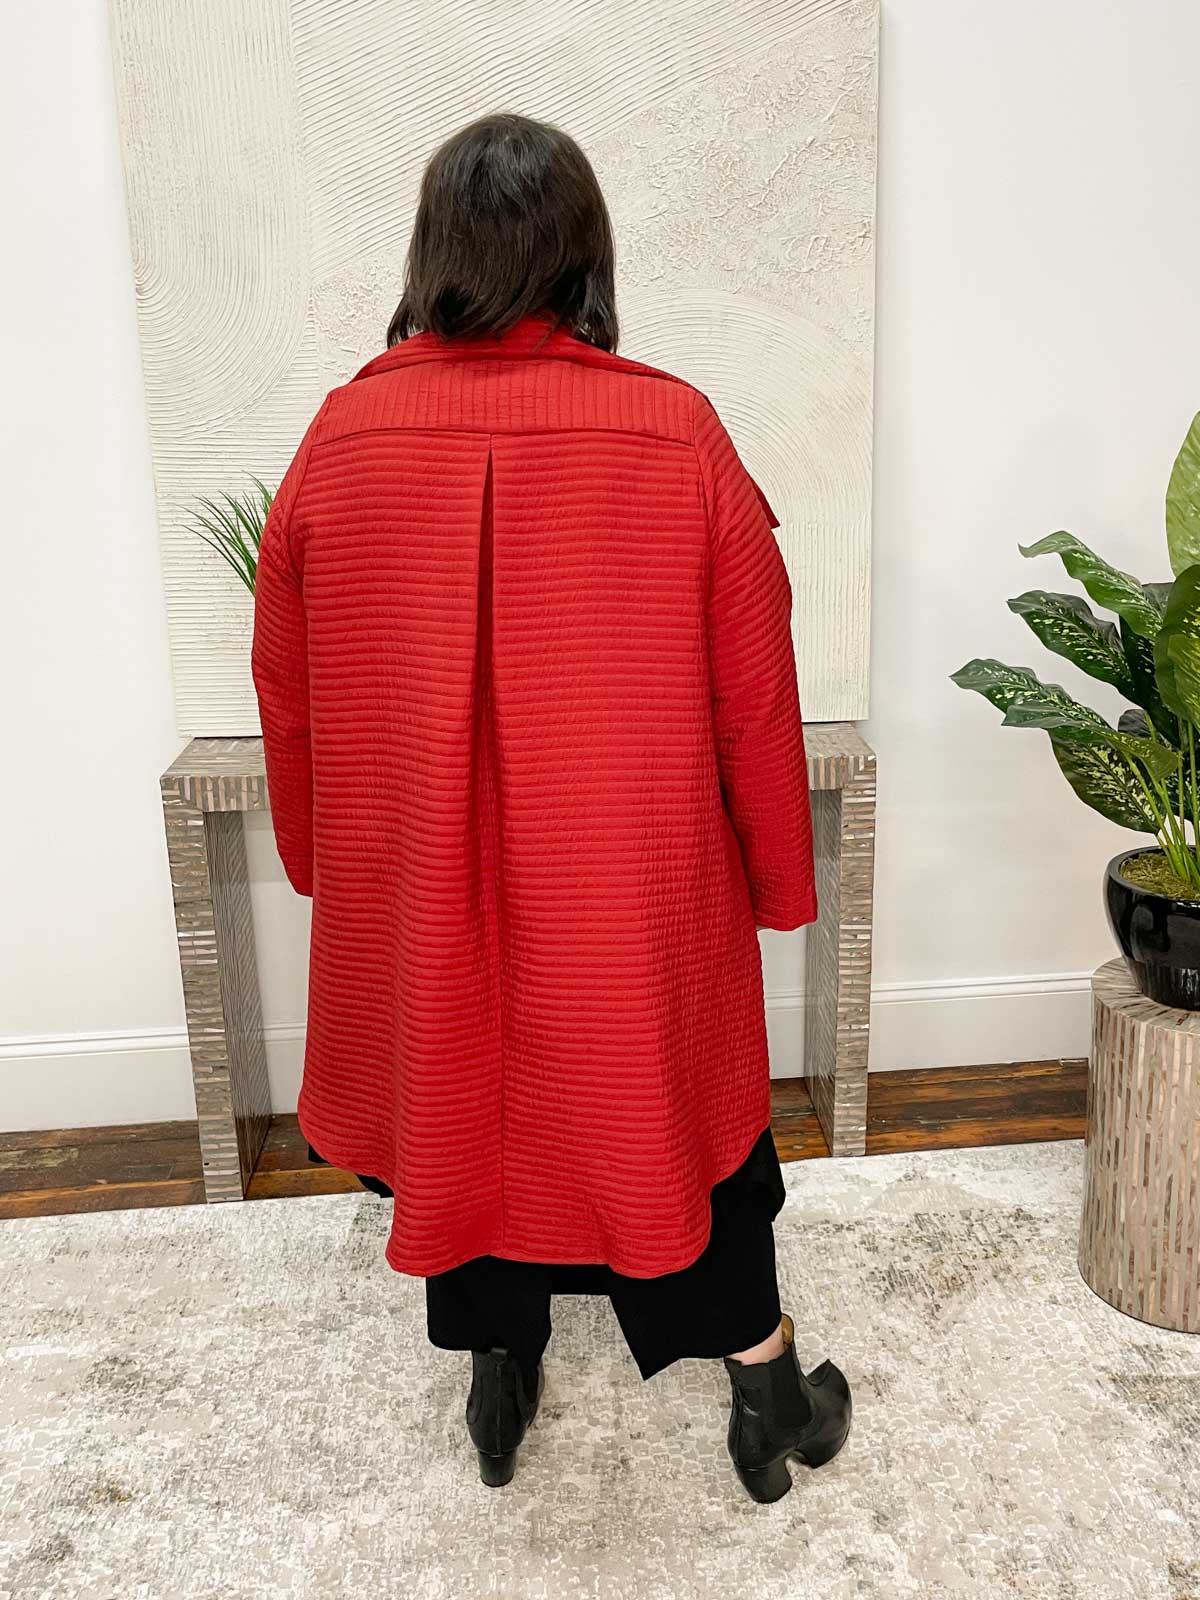 Kedem Sasson Elegance Jacket, Red - Statement Boutique